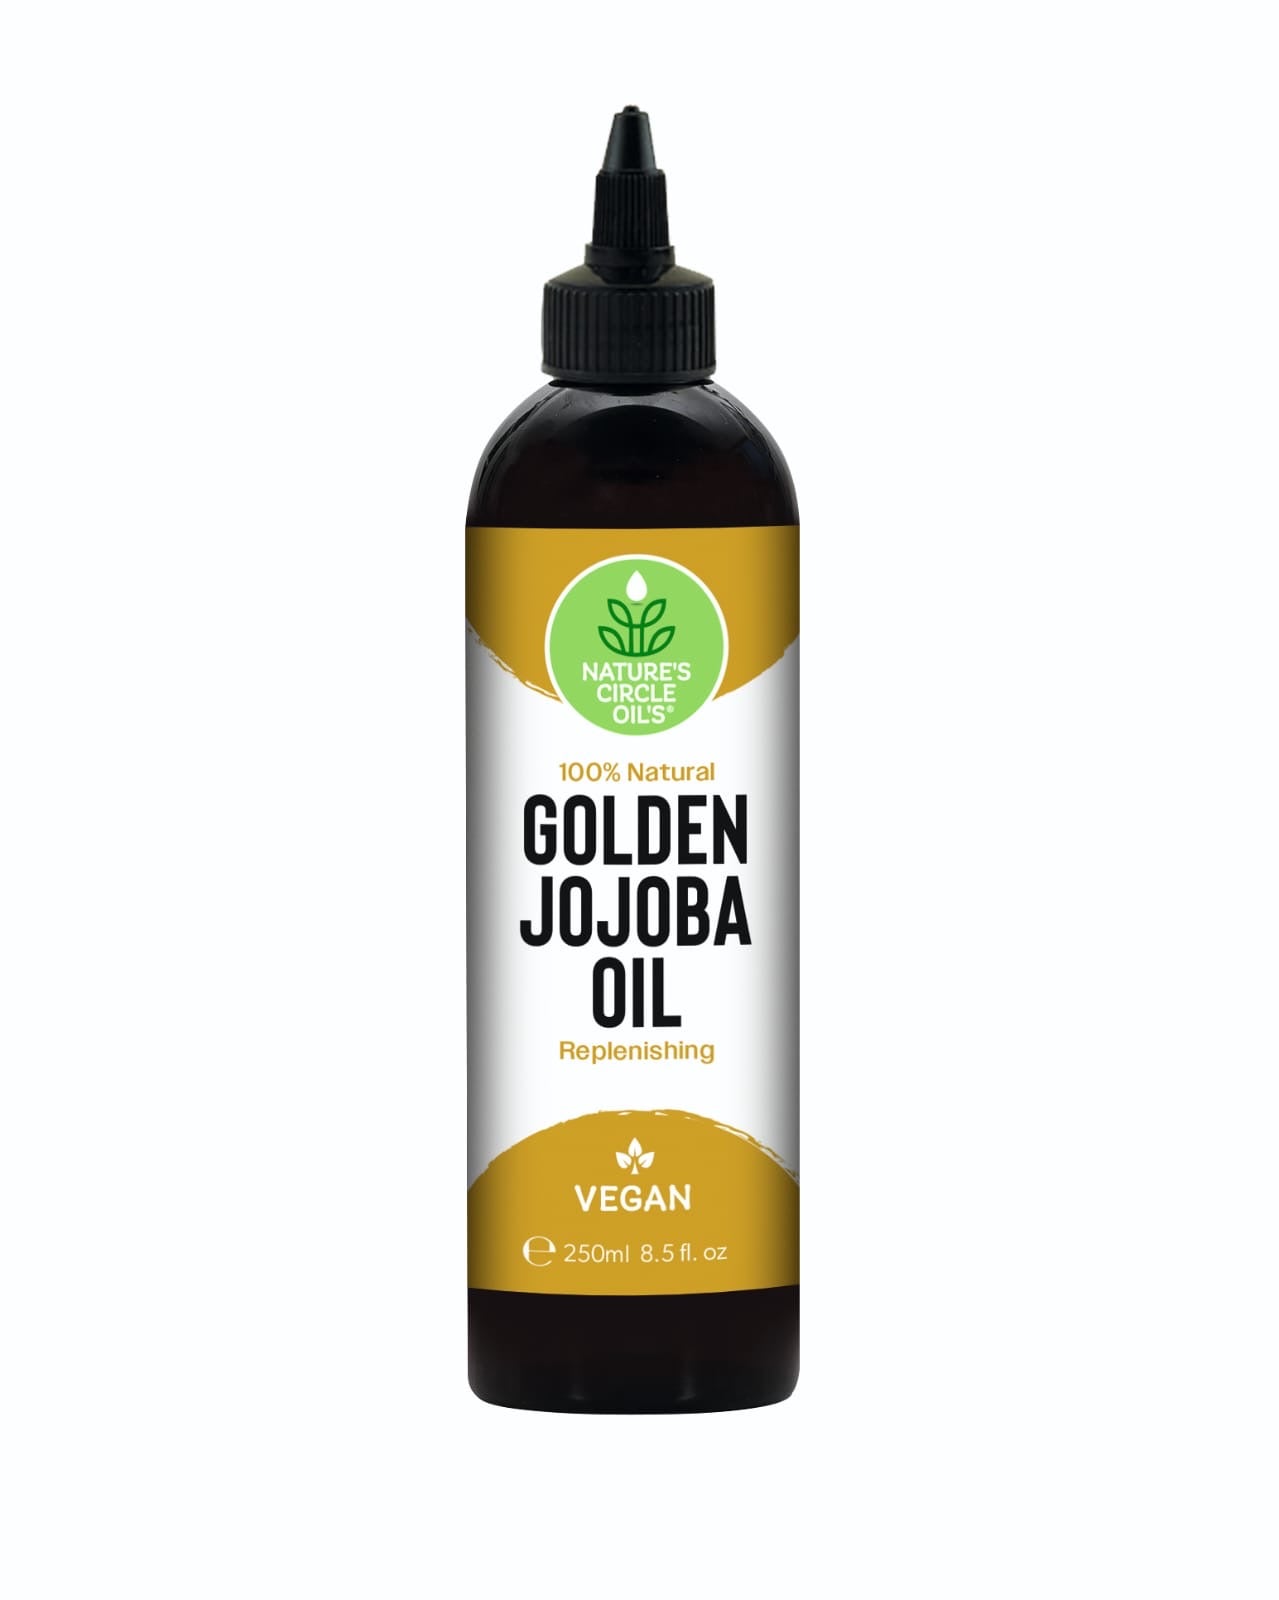 Natures Circle Oils Golden Jojoba Oil 250ml / 8.5 oz